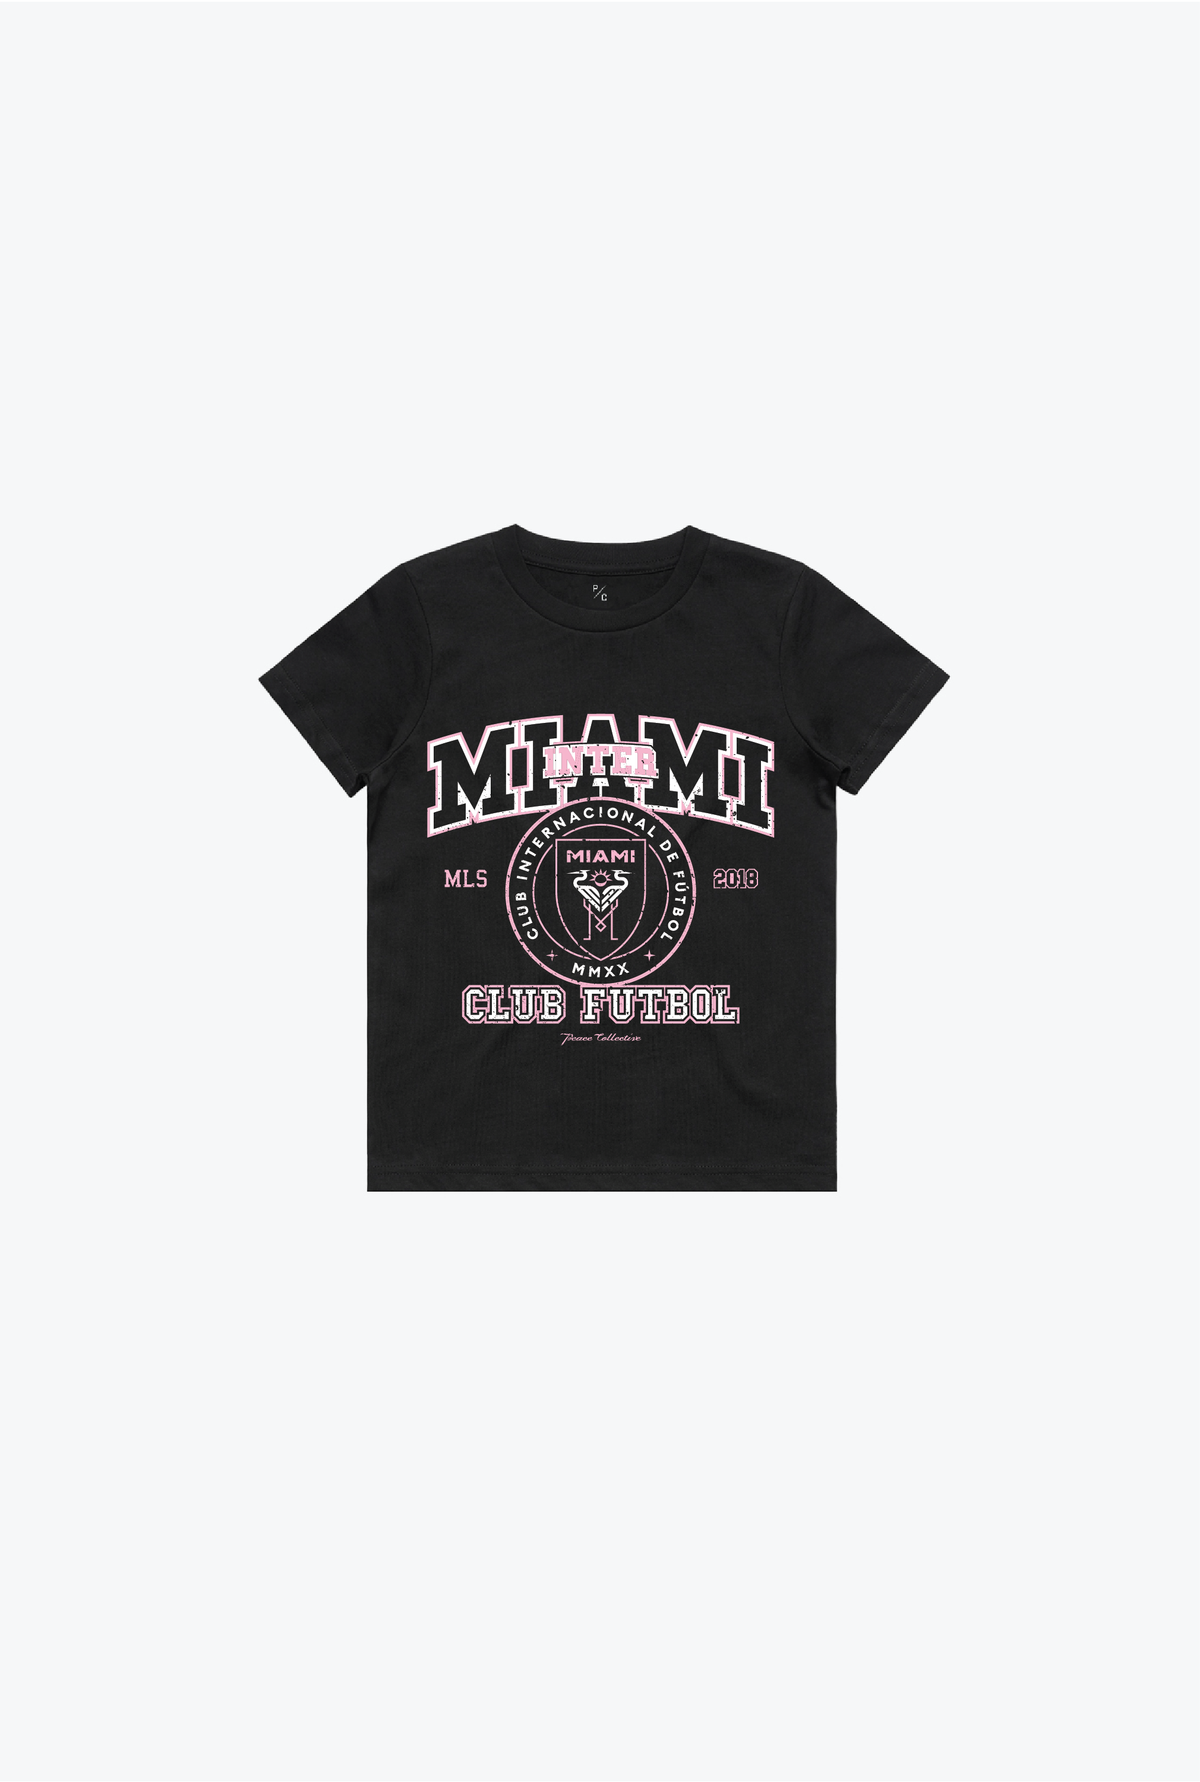 Inter Miami CF Vintage Washed Kids T-Shirt - Black